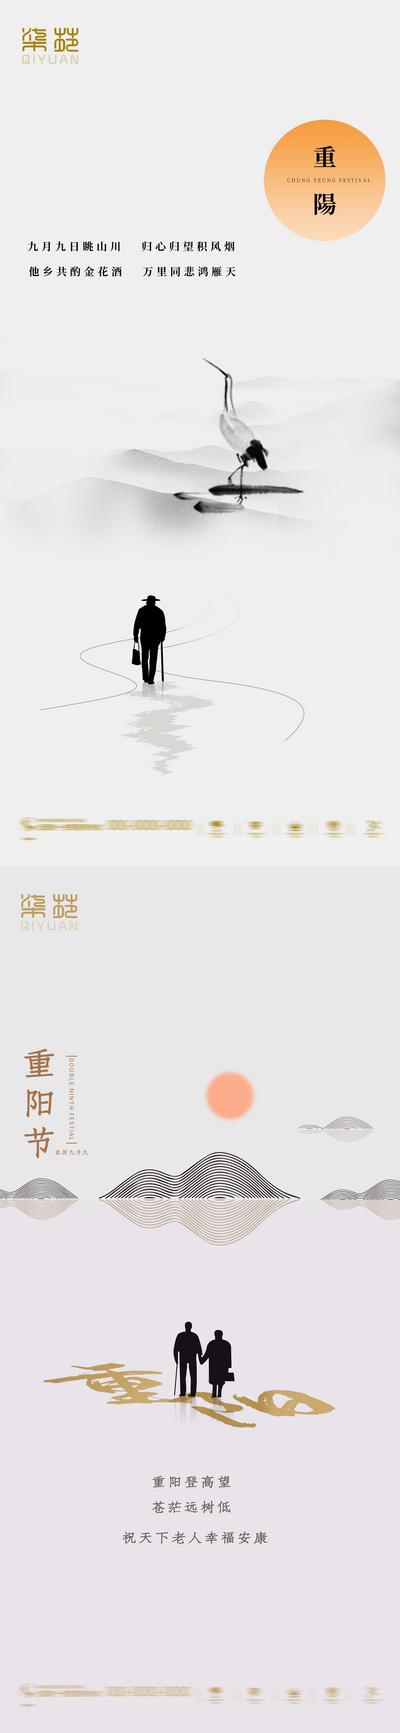 南门网 海报 房地产 中国传统节日 重阳节 中国风 简约 水墨